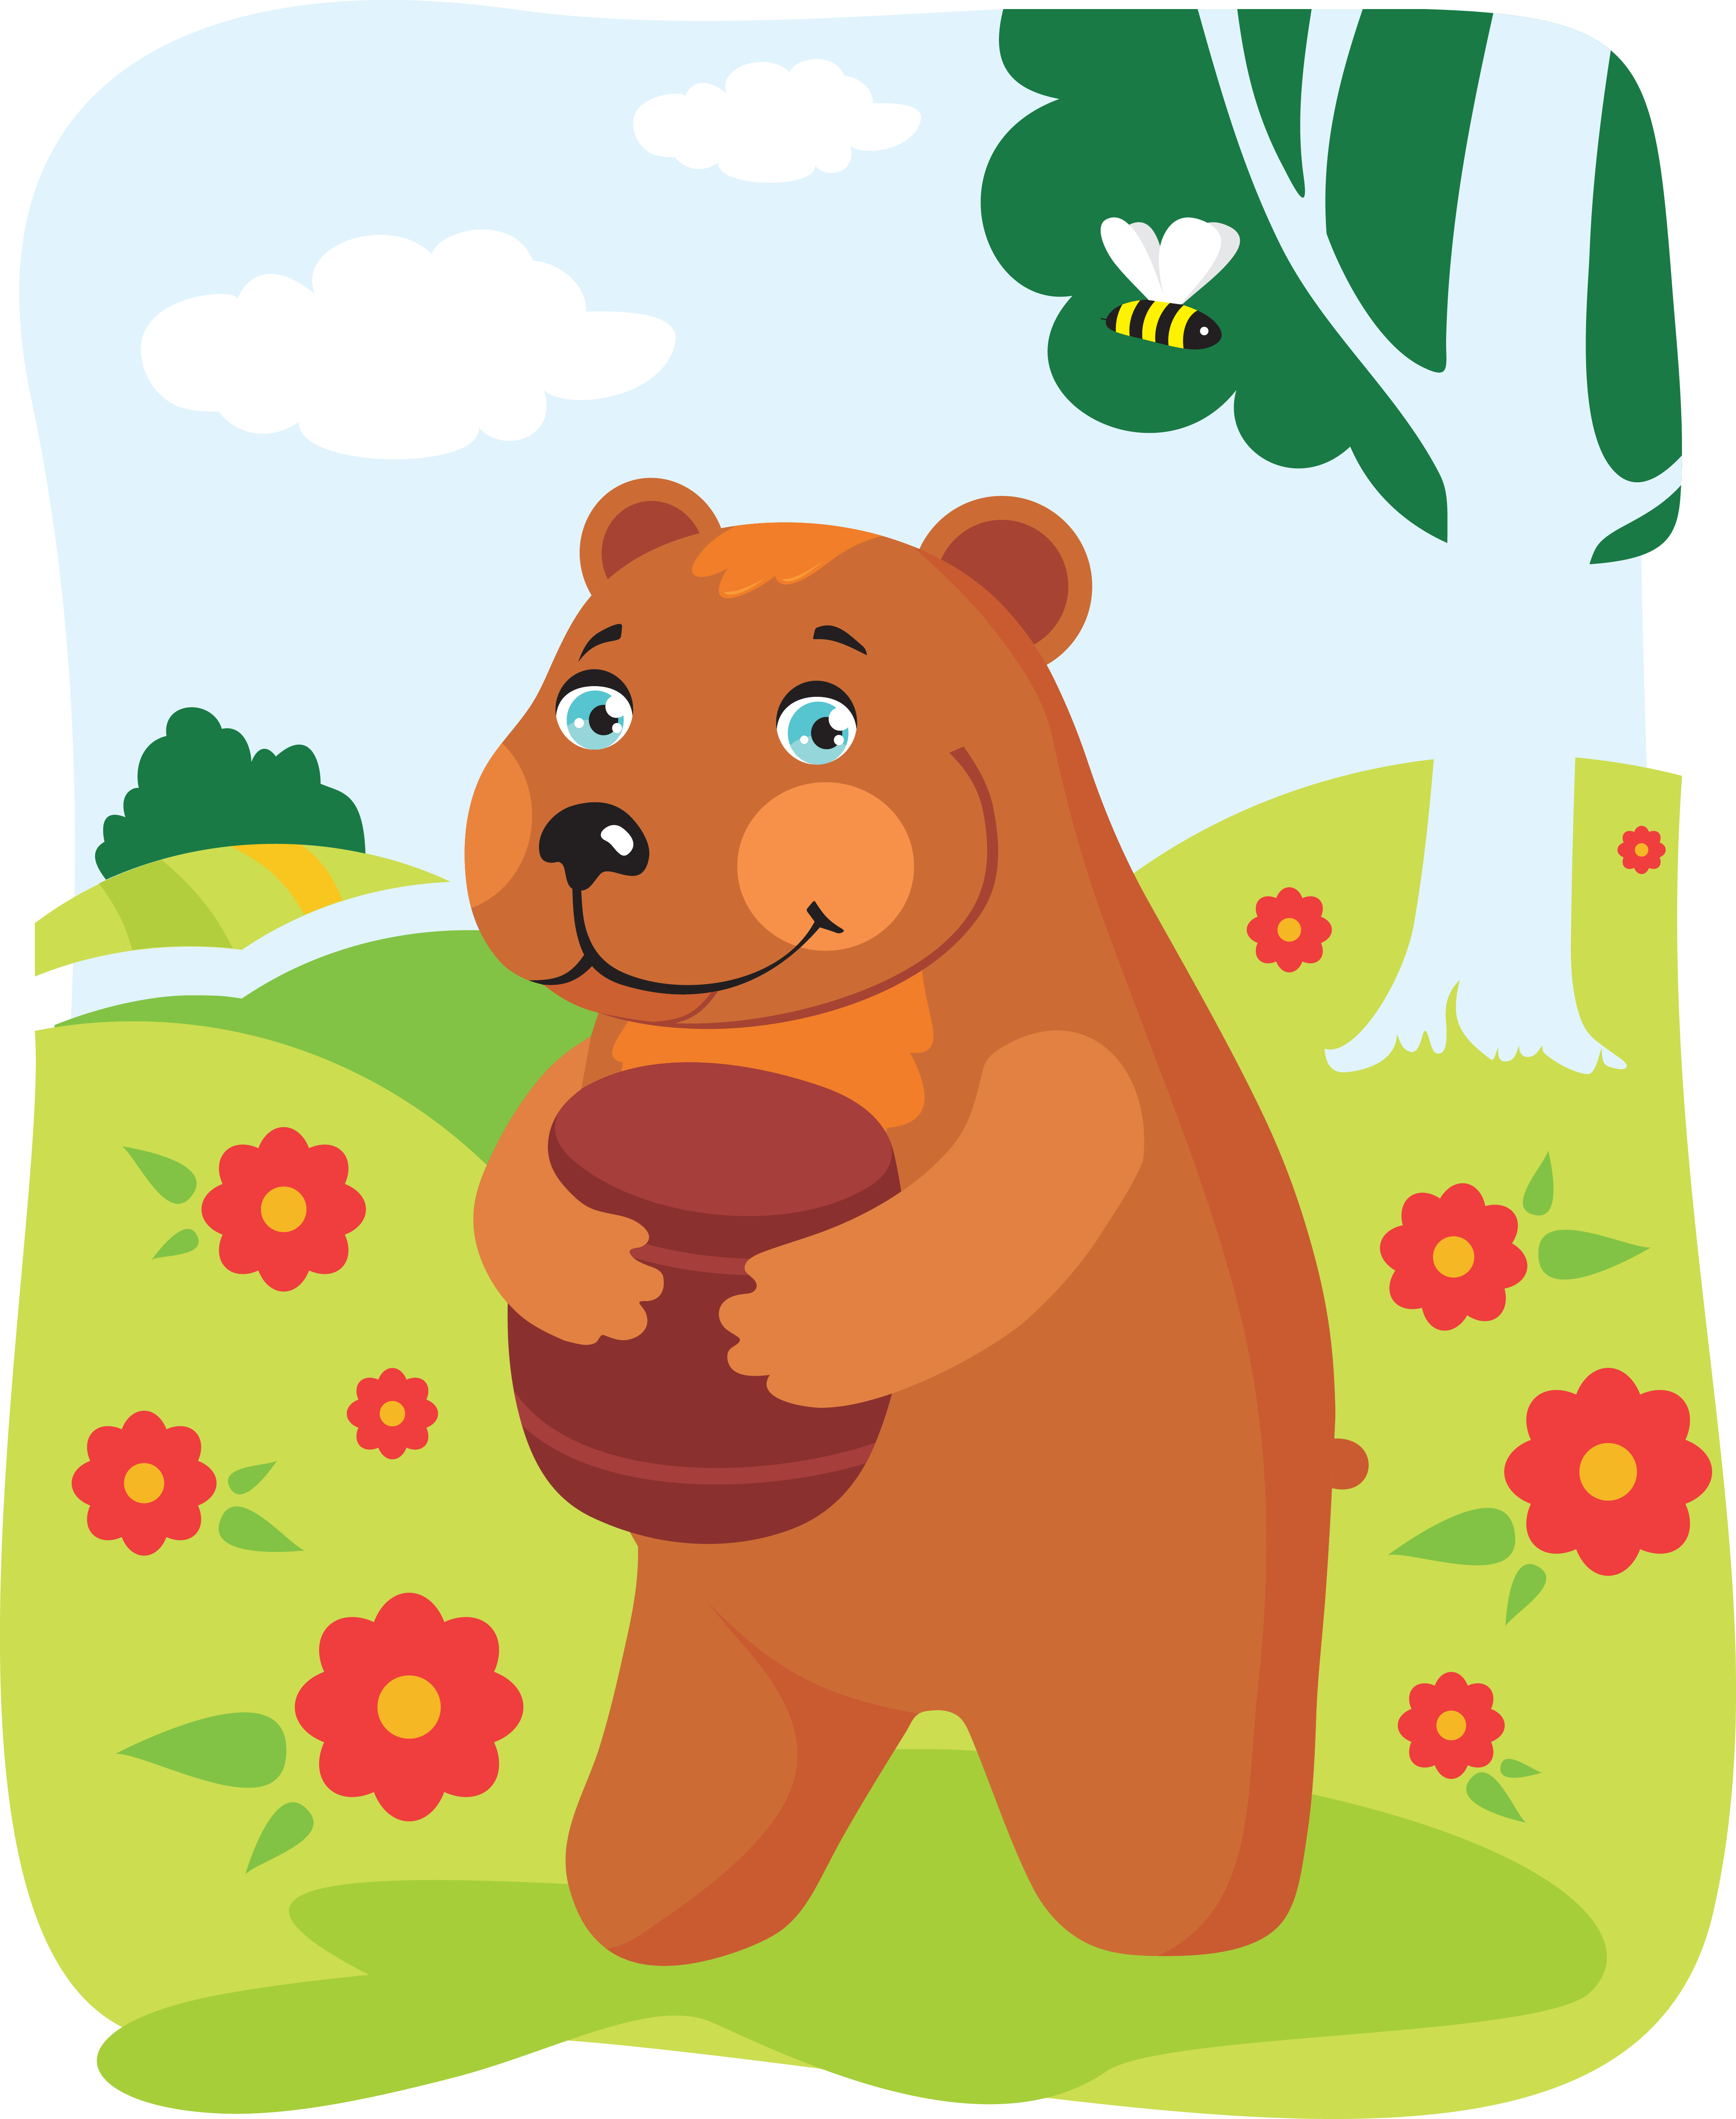 Медовый мишка 38. Медведь с медом. Медвежонок с бочонком меда. Медведь с бочкой меда. Медведь с бочонком.